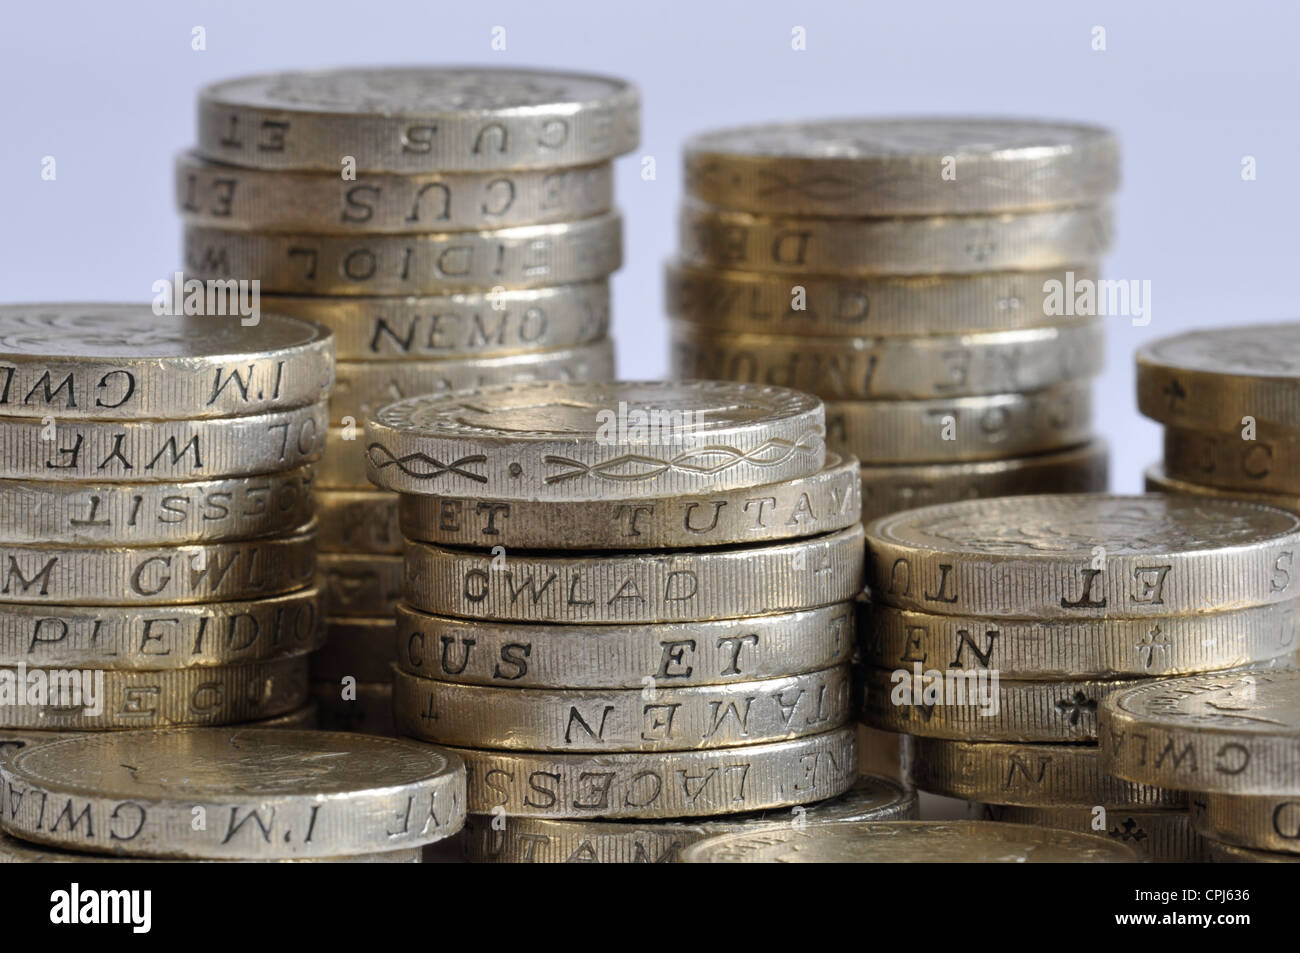 Royaume-uni une livre de monnaie, une pile de pièces livre. pile de l'argent. pile de pièces, €1 Banque D'Images